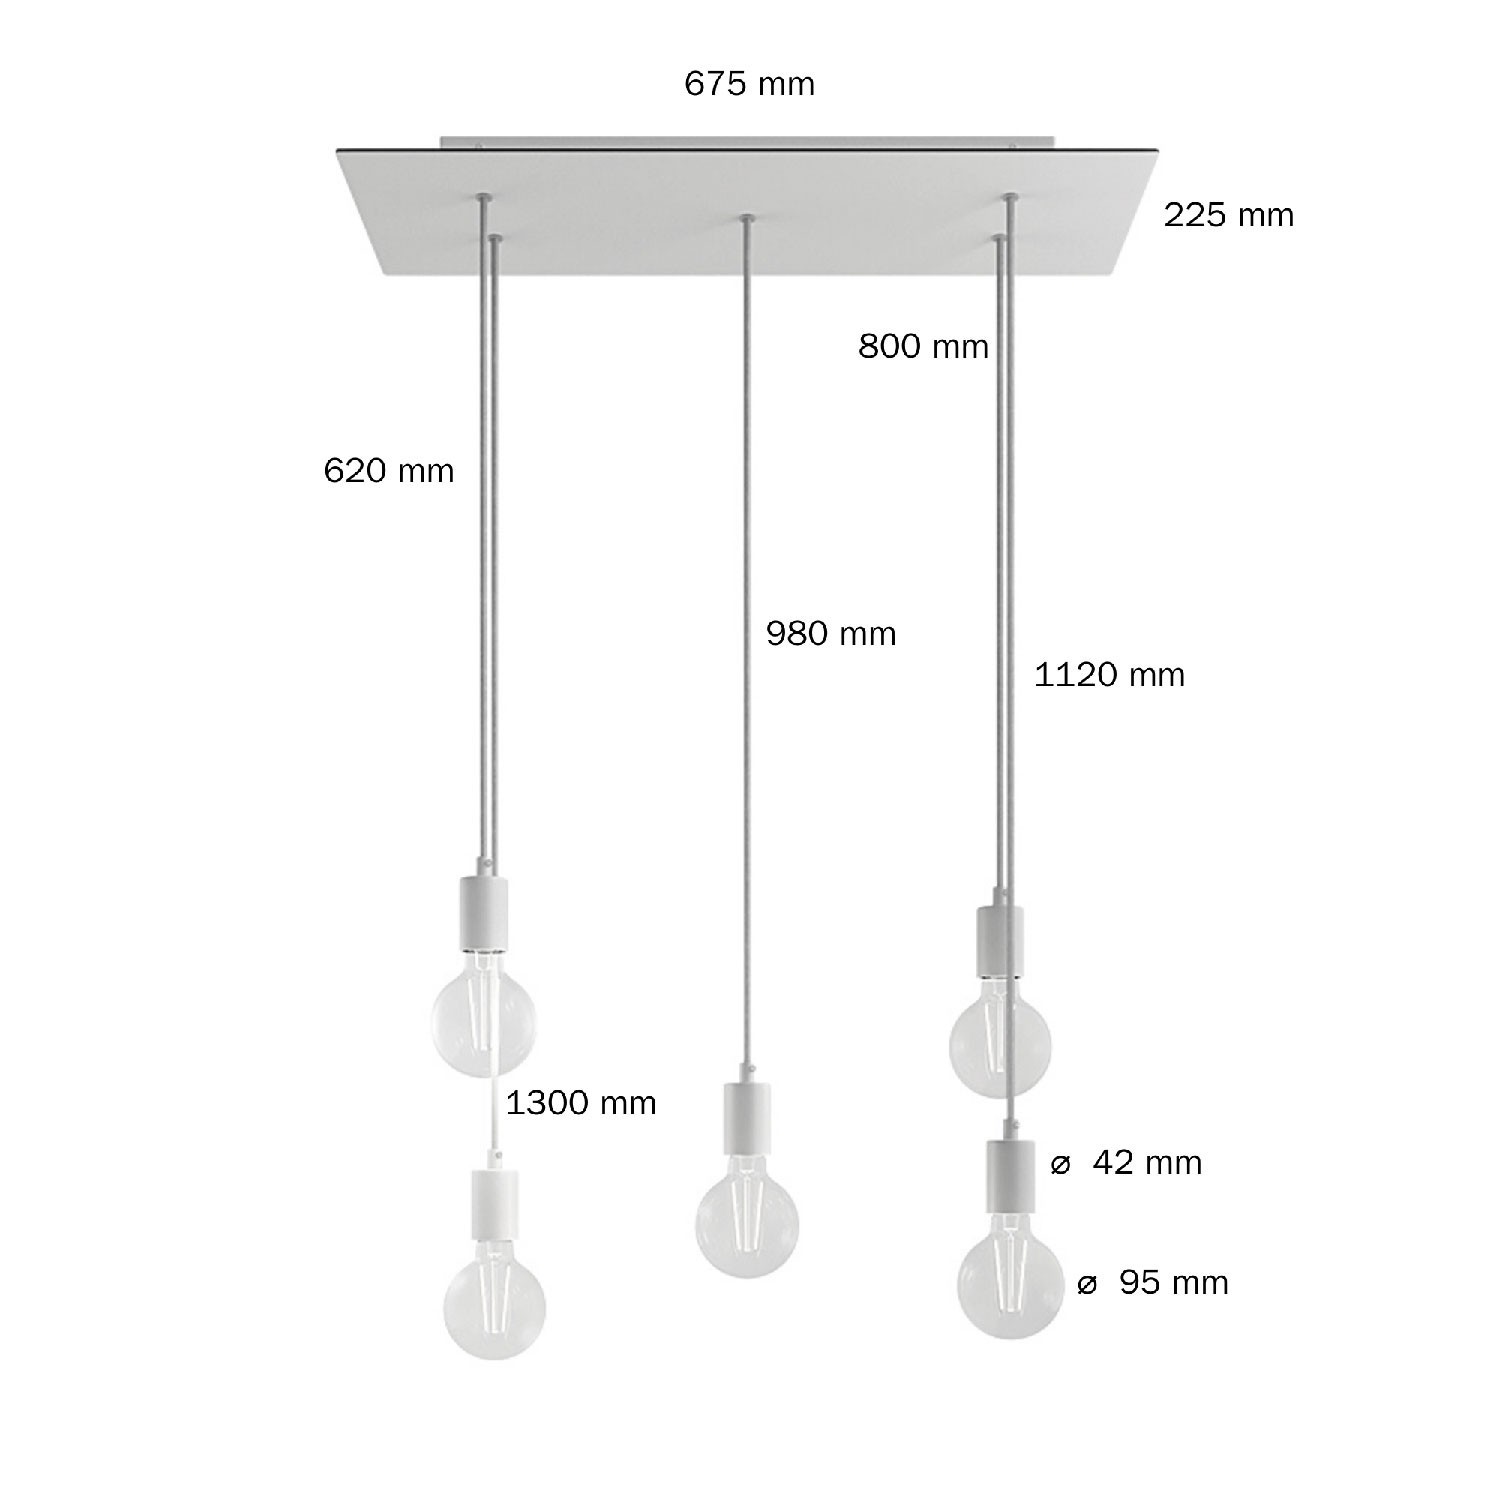 5 lichts-hanglamp voorzien van XXL rechthoekige Rose-One 675 mm compleet met strijkijzersnoer en metalen afwerking